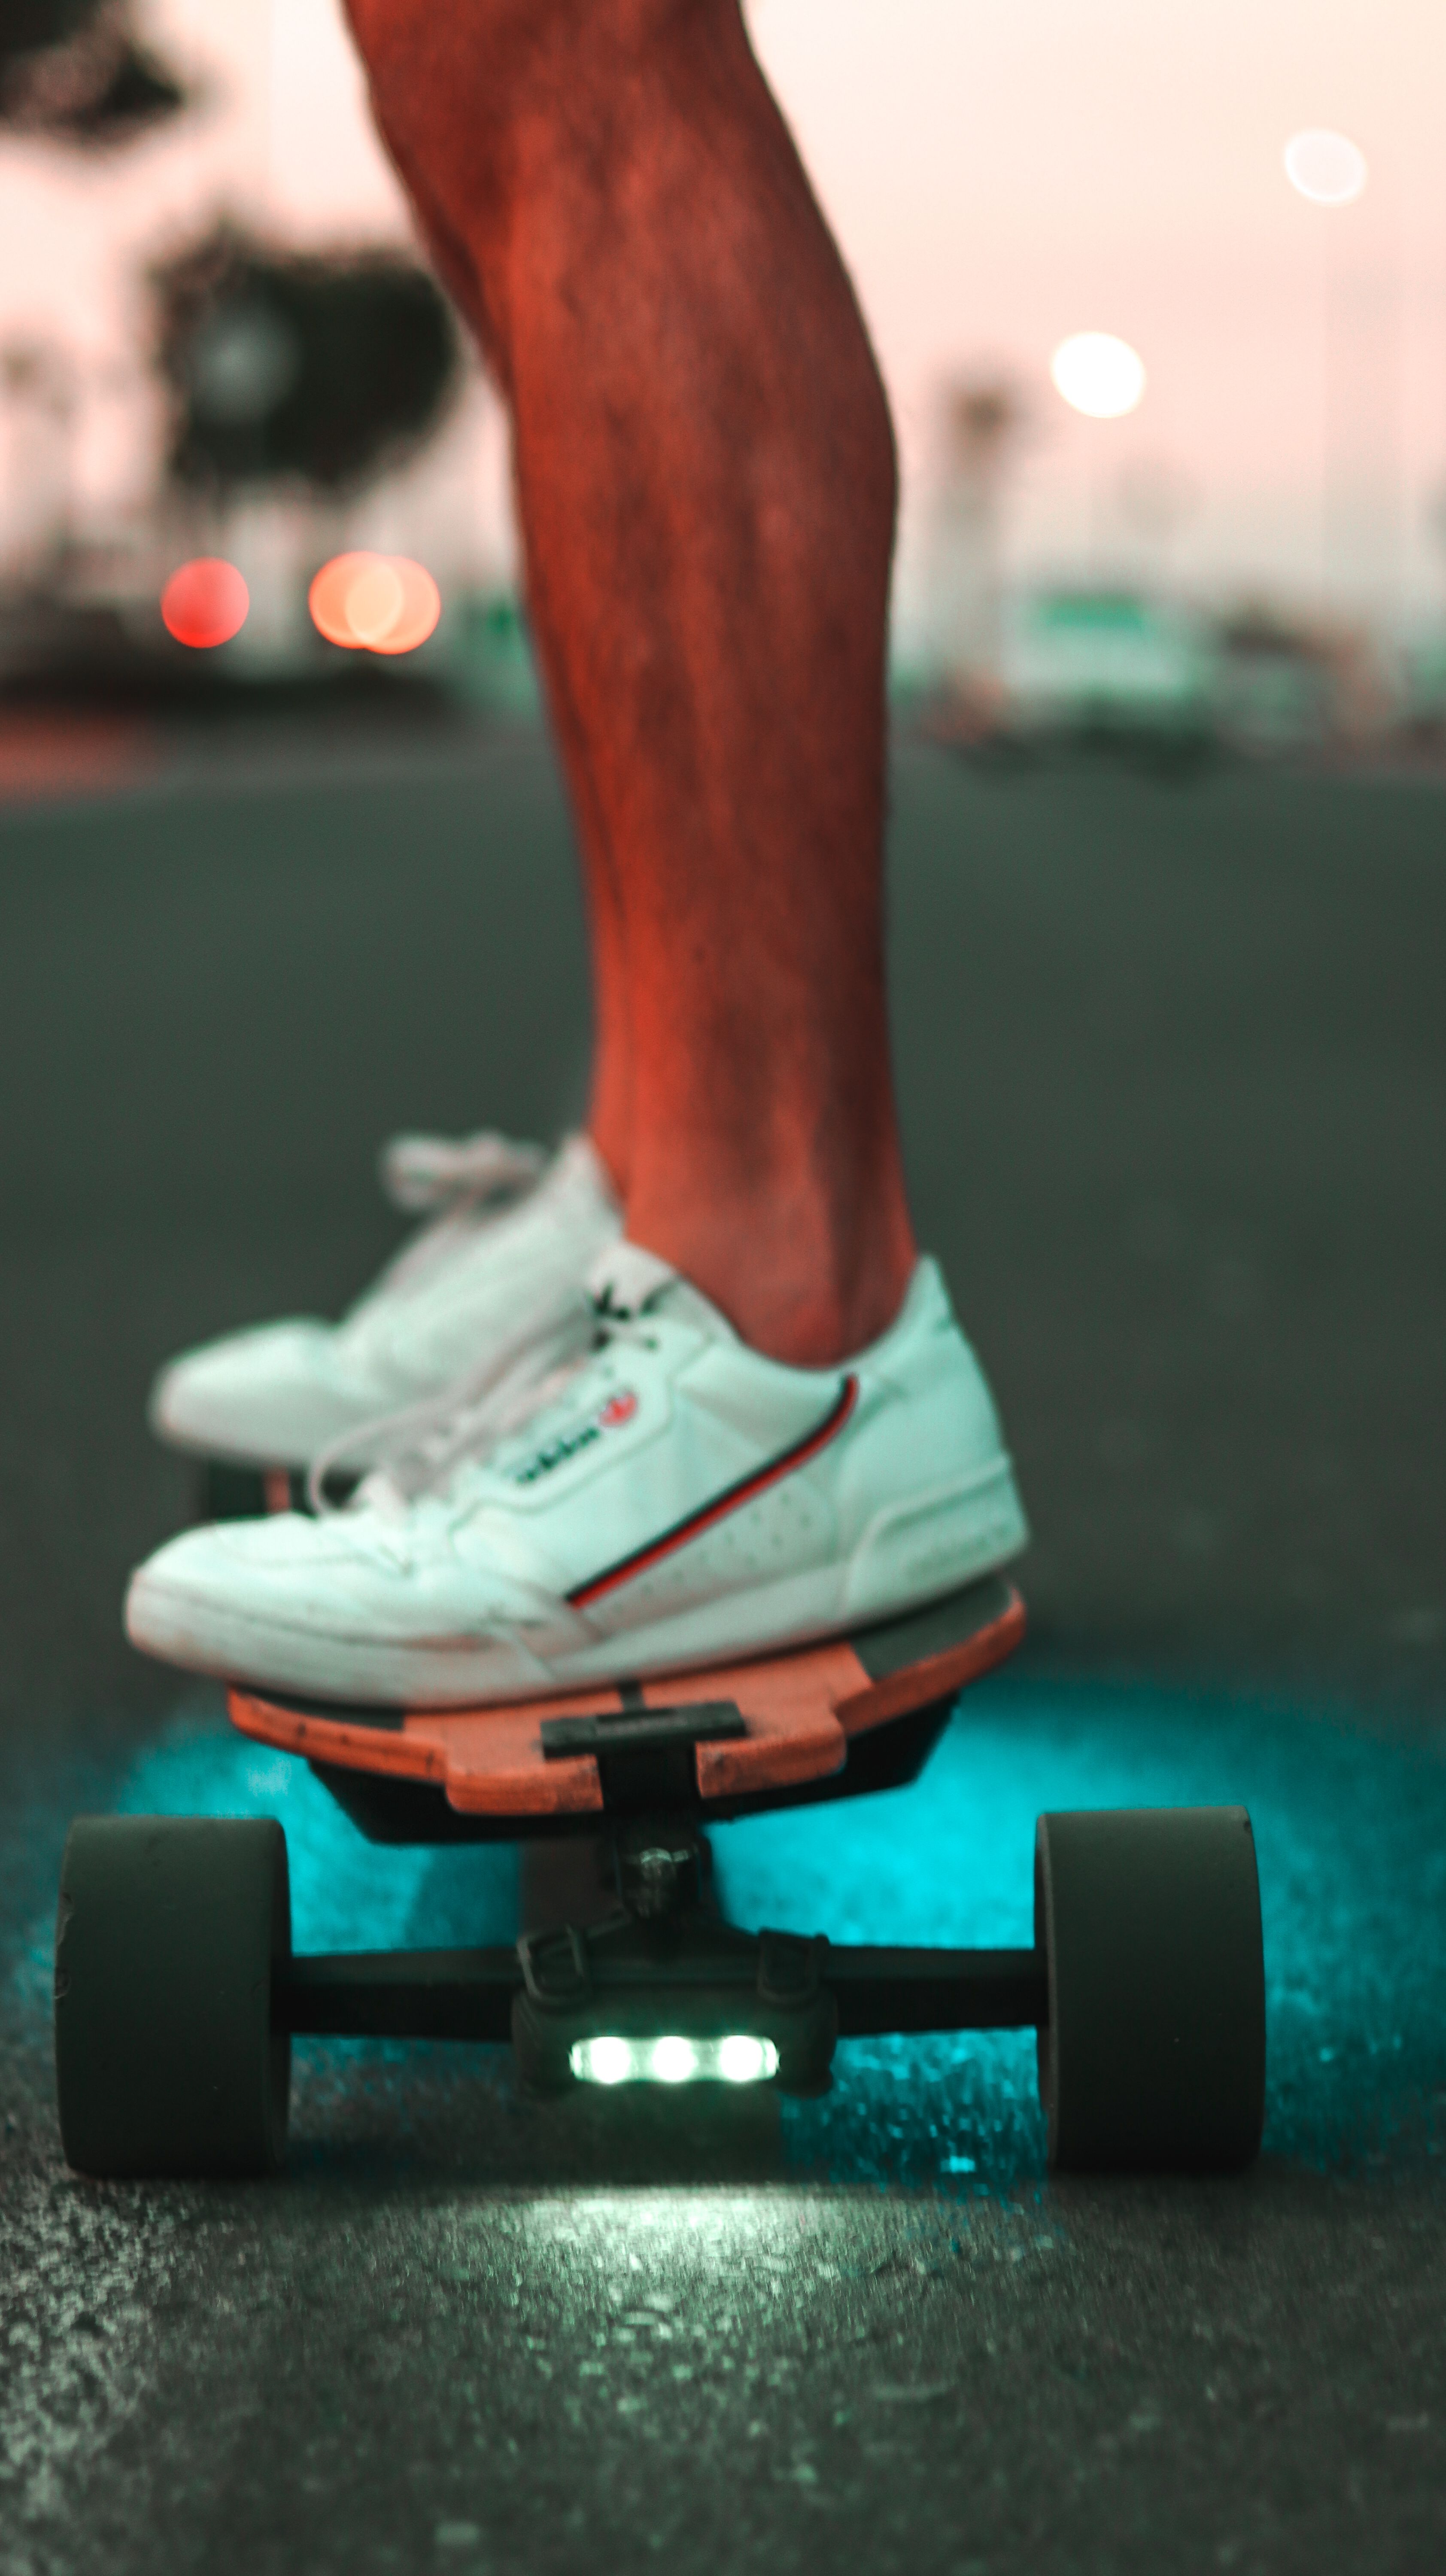 Evolve Electric Skateboards Skateboard Design